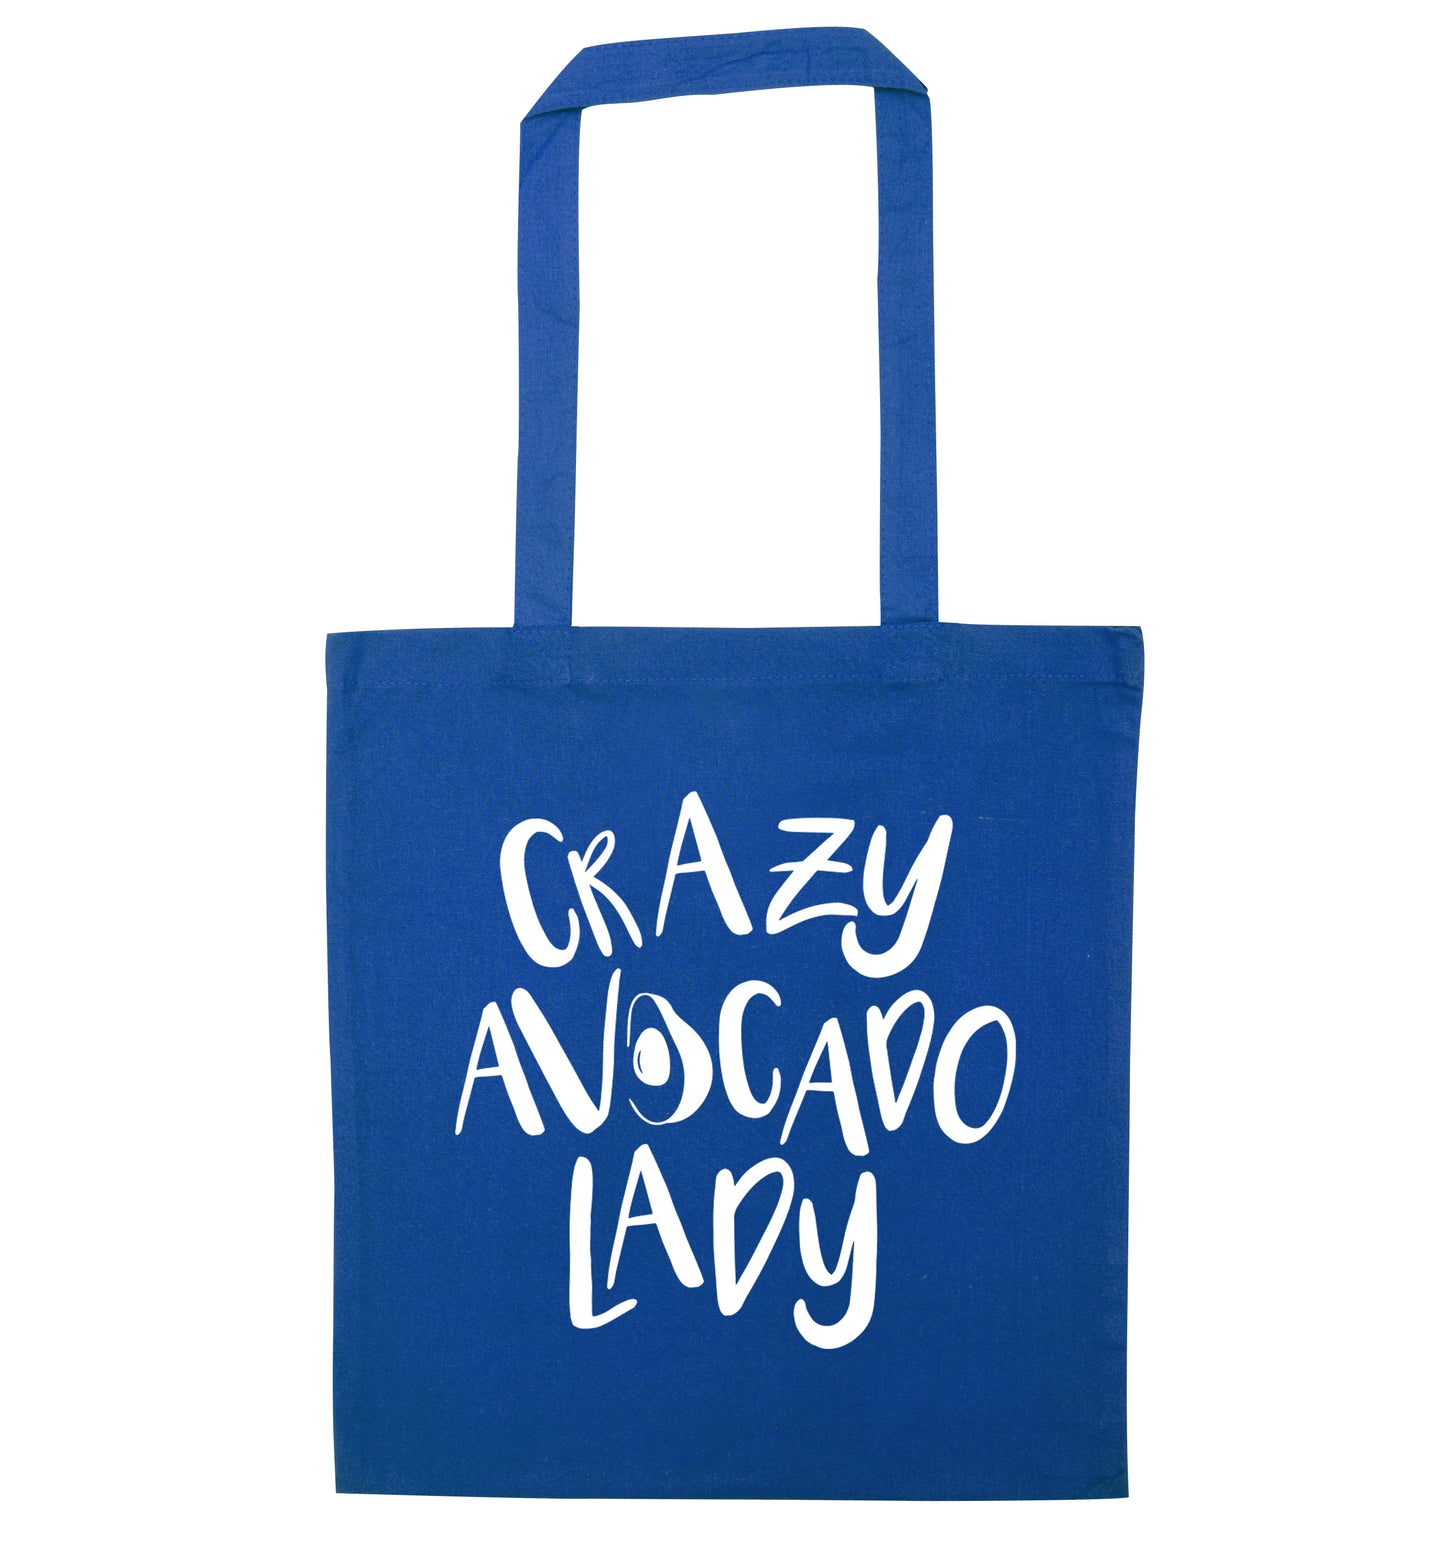 Crazy avocado lady blue tote bag